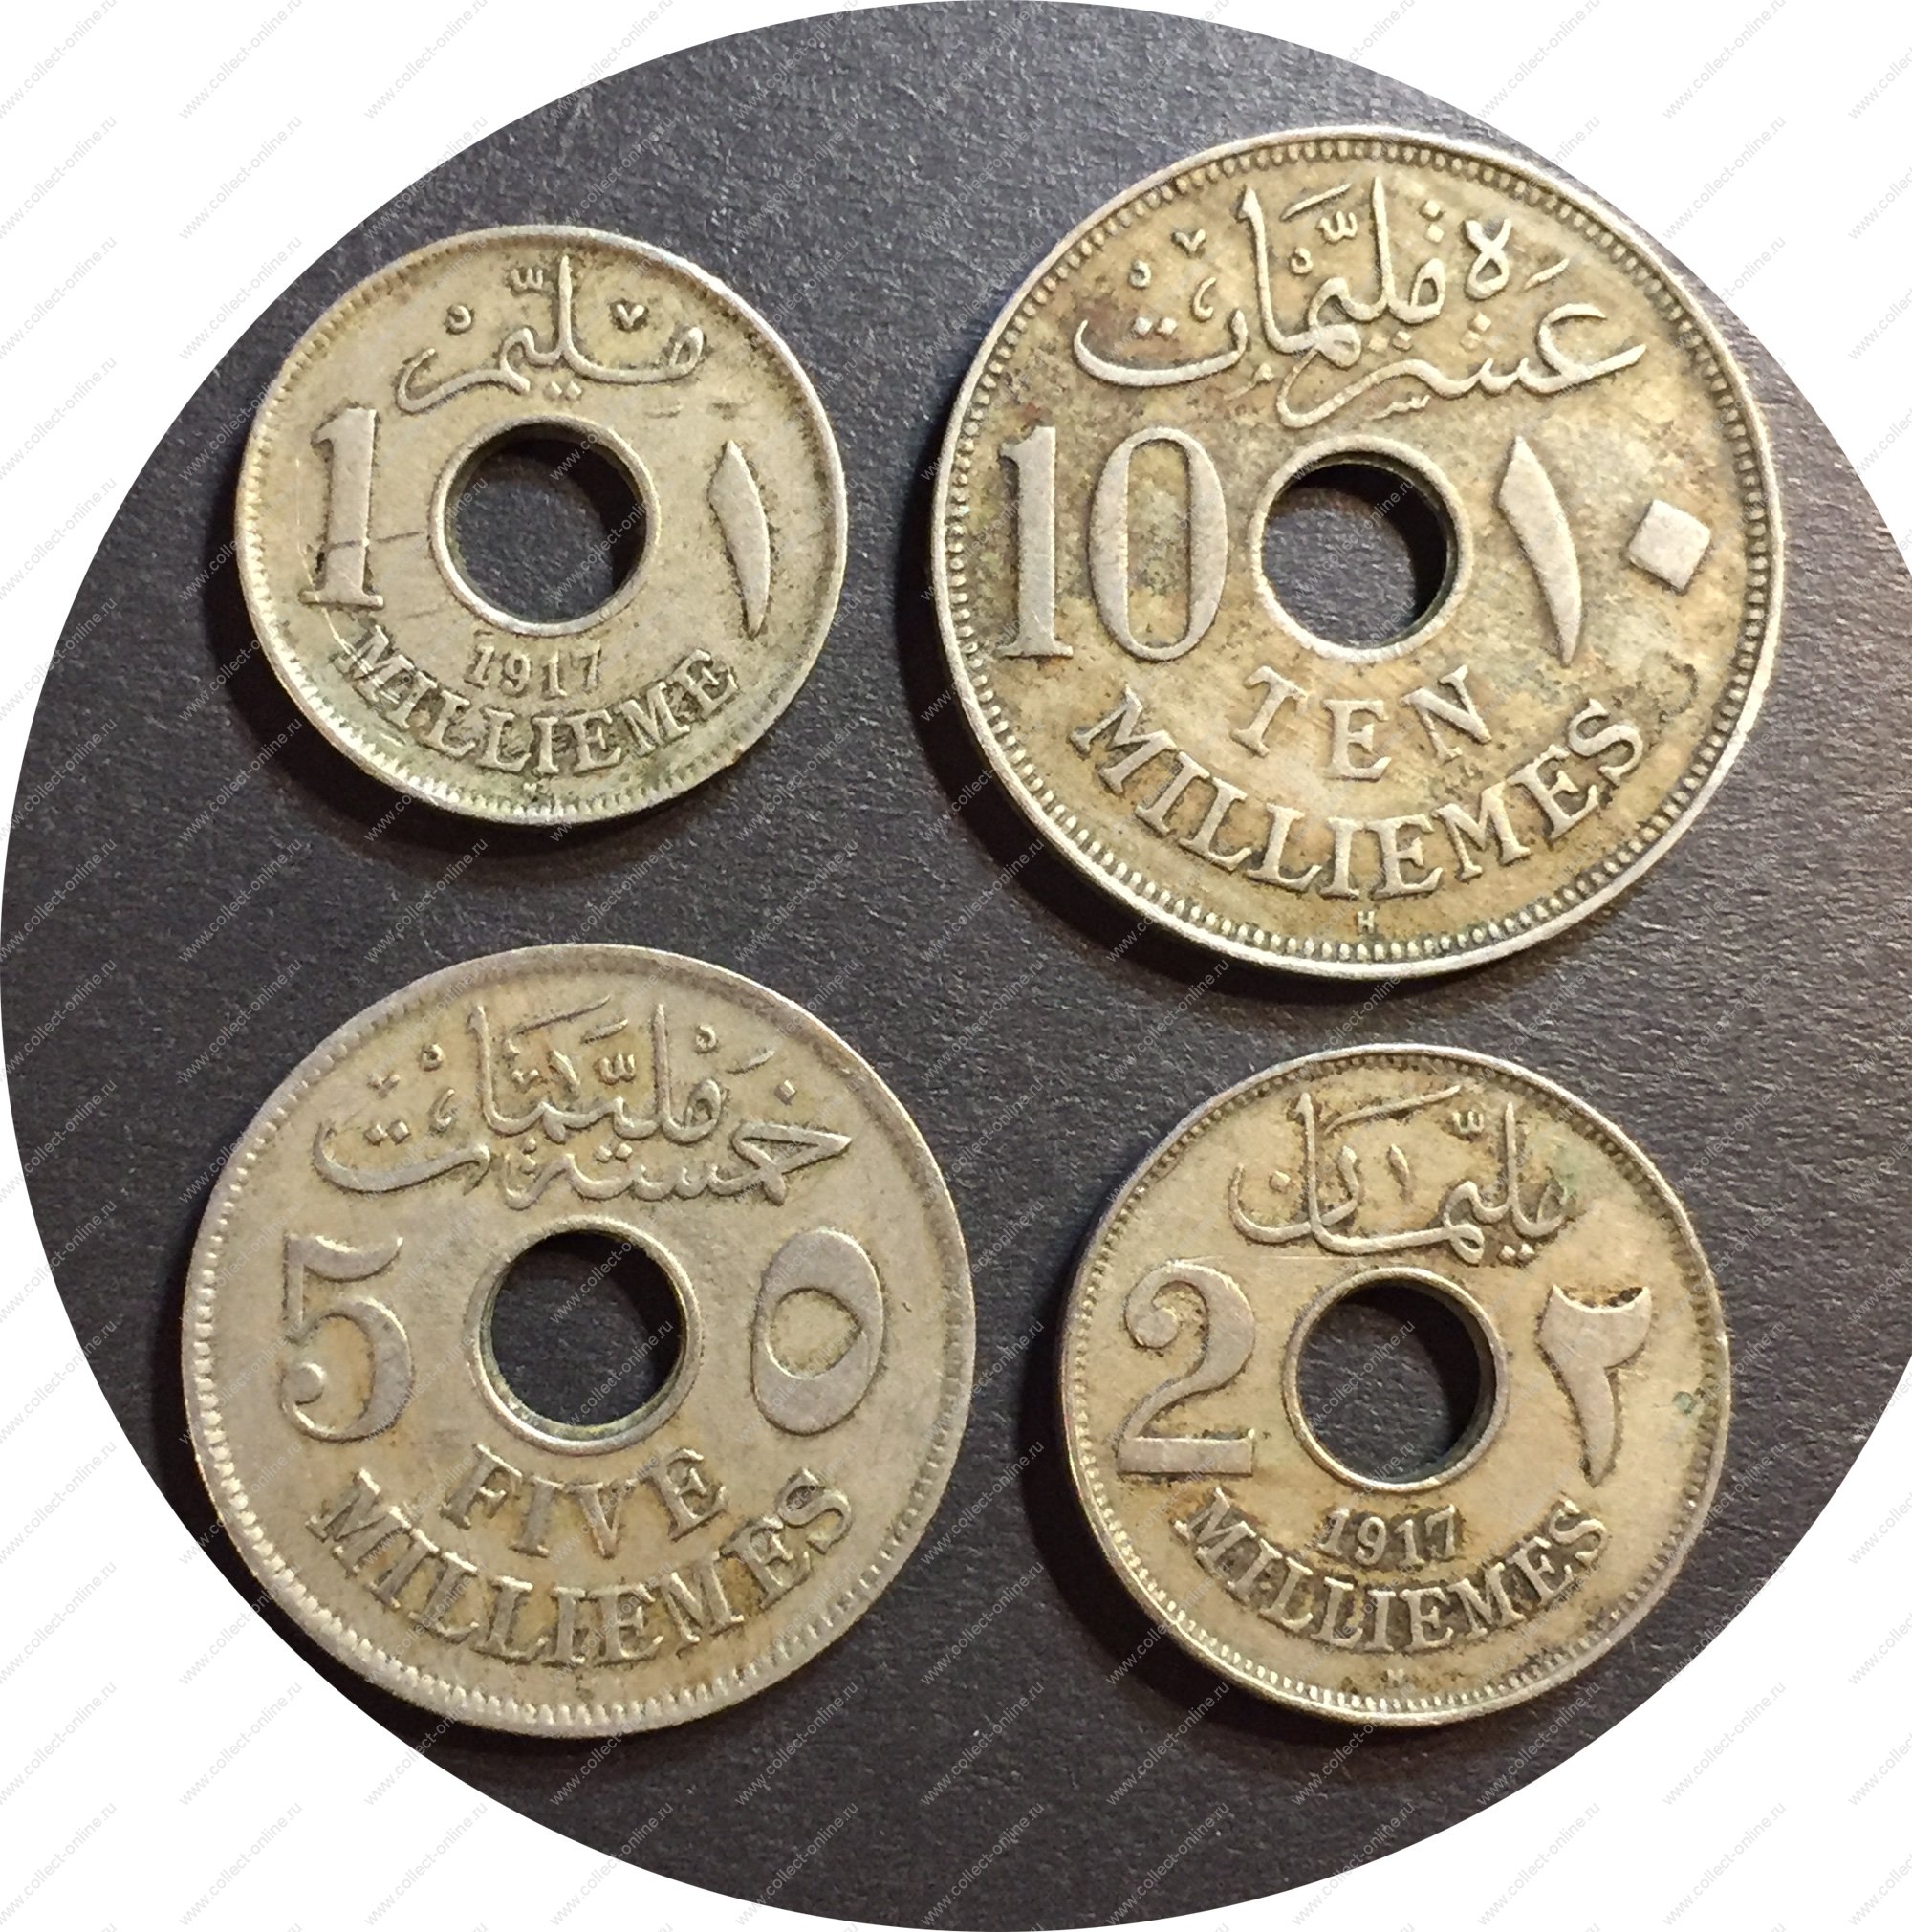 Сайт коллекционеров монет. Монета с дыркой Египет. 10 Милльемов Египет 1916. Коллекционер монет в Альметьевске. Пятый элемент Египет 1917 Перинь.